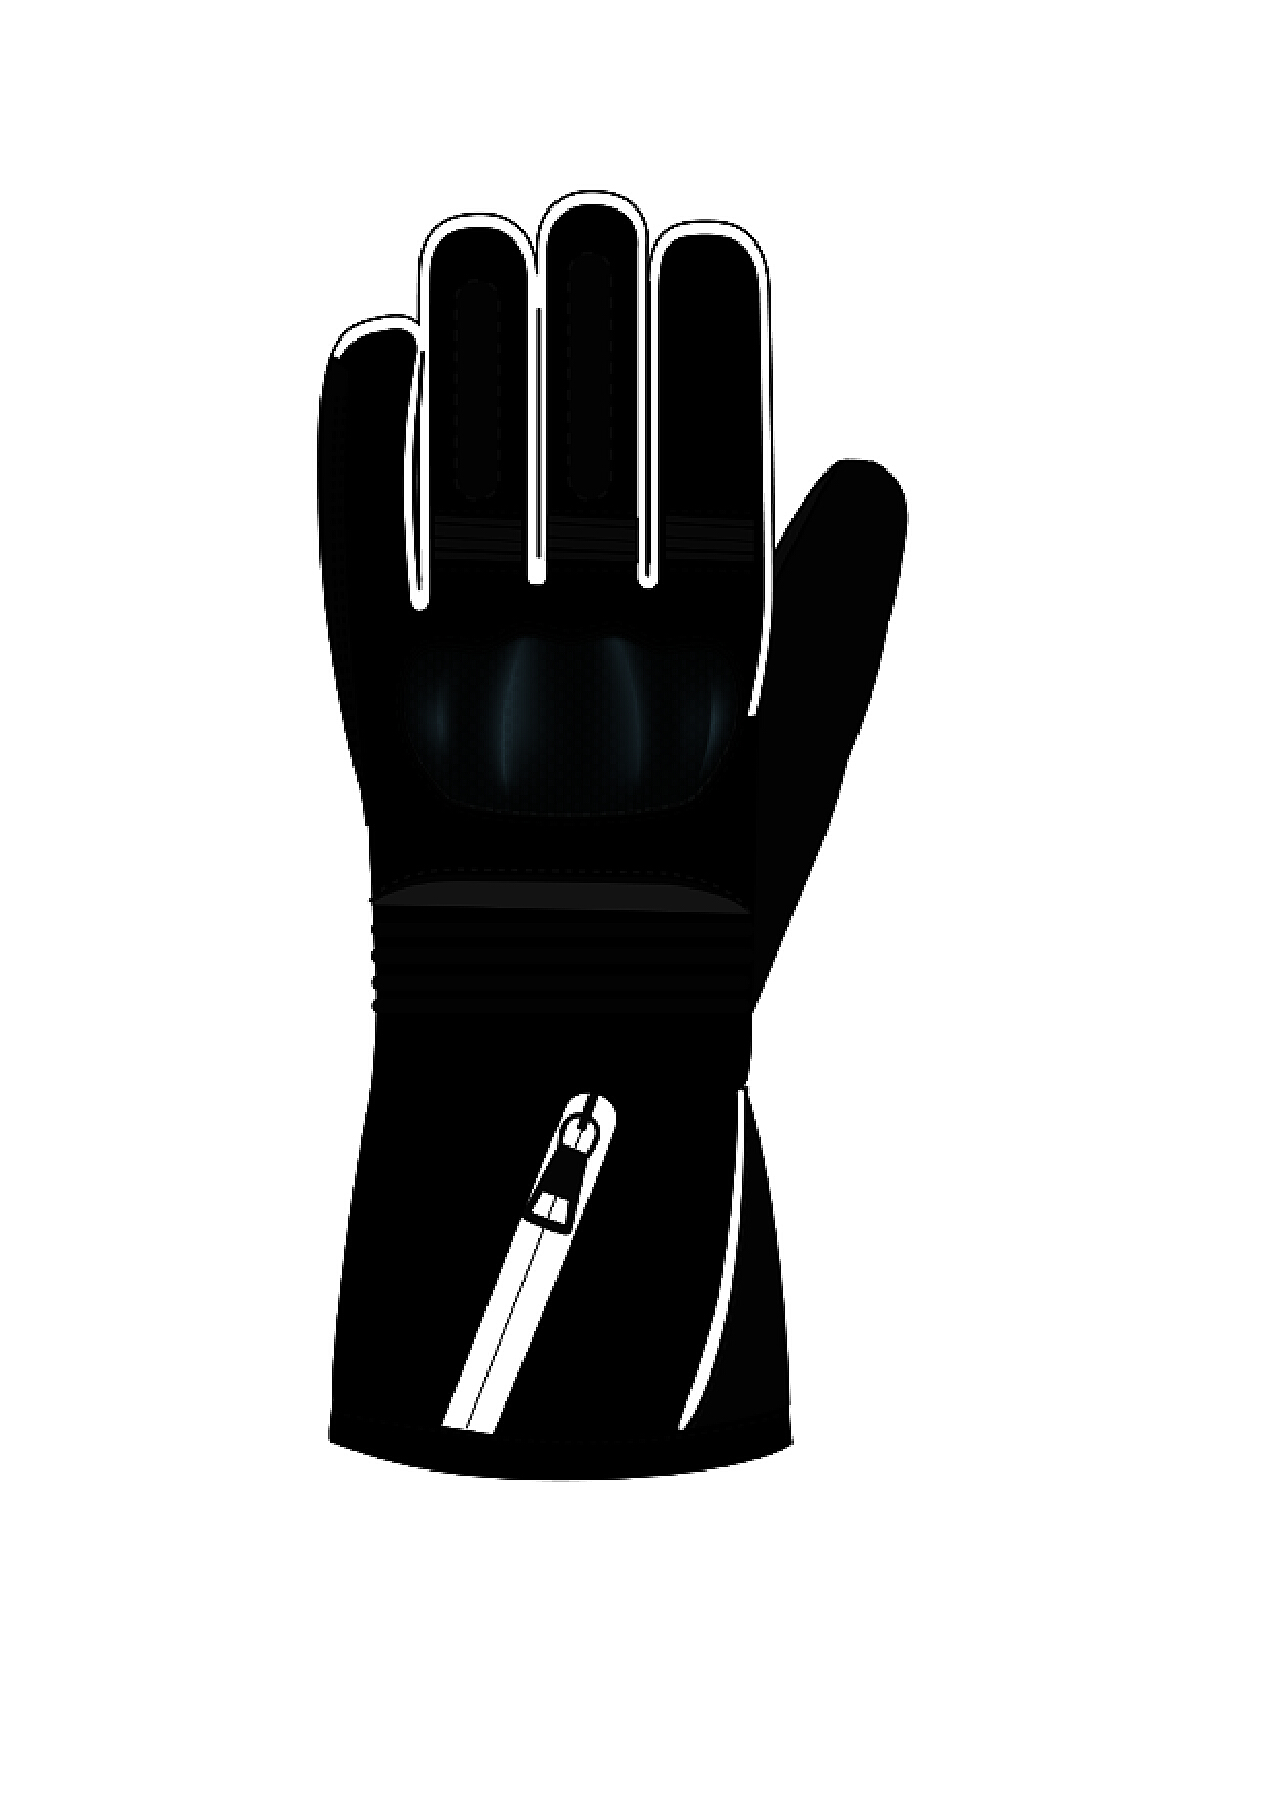 司机手套_机械防护手套,PVC化学品手套,丁腈乳胶手套,专用(工具)手套,耐高温手套,通用防护手套